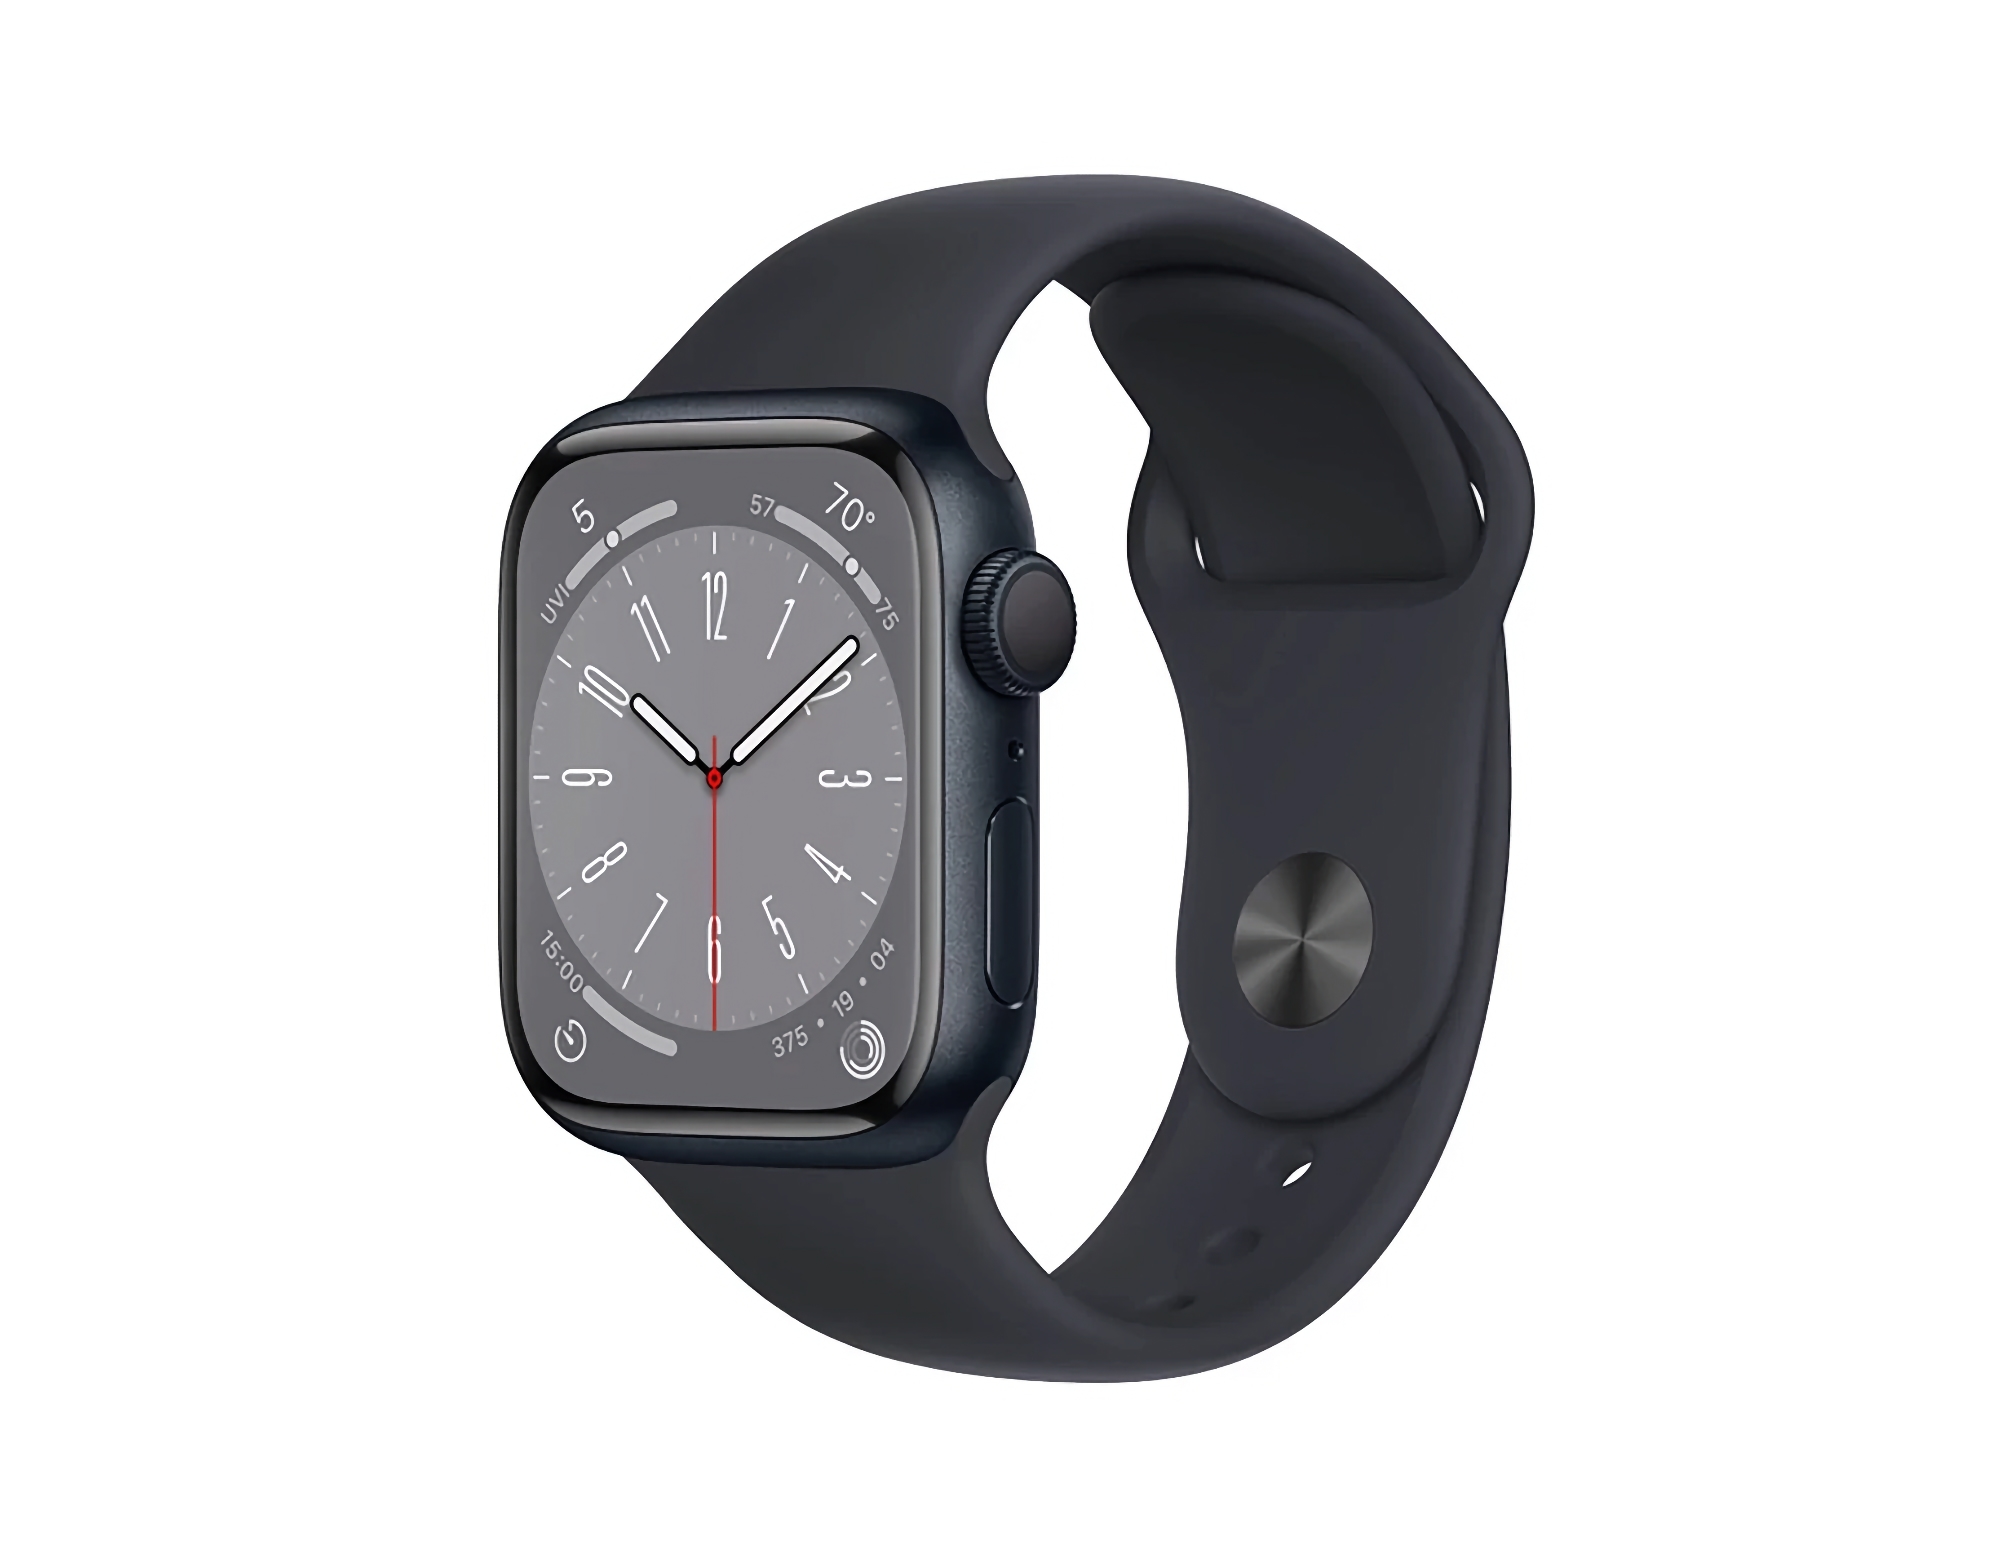 Angebot des Tages: Apple Watch Series 8 bei Amazon für $174 Rabatt